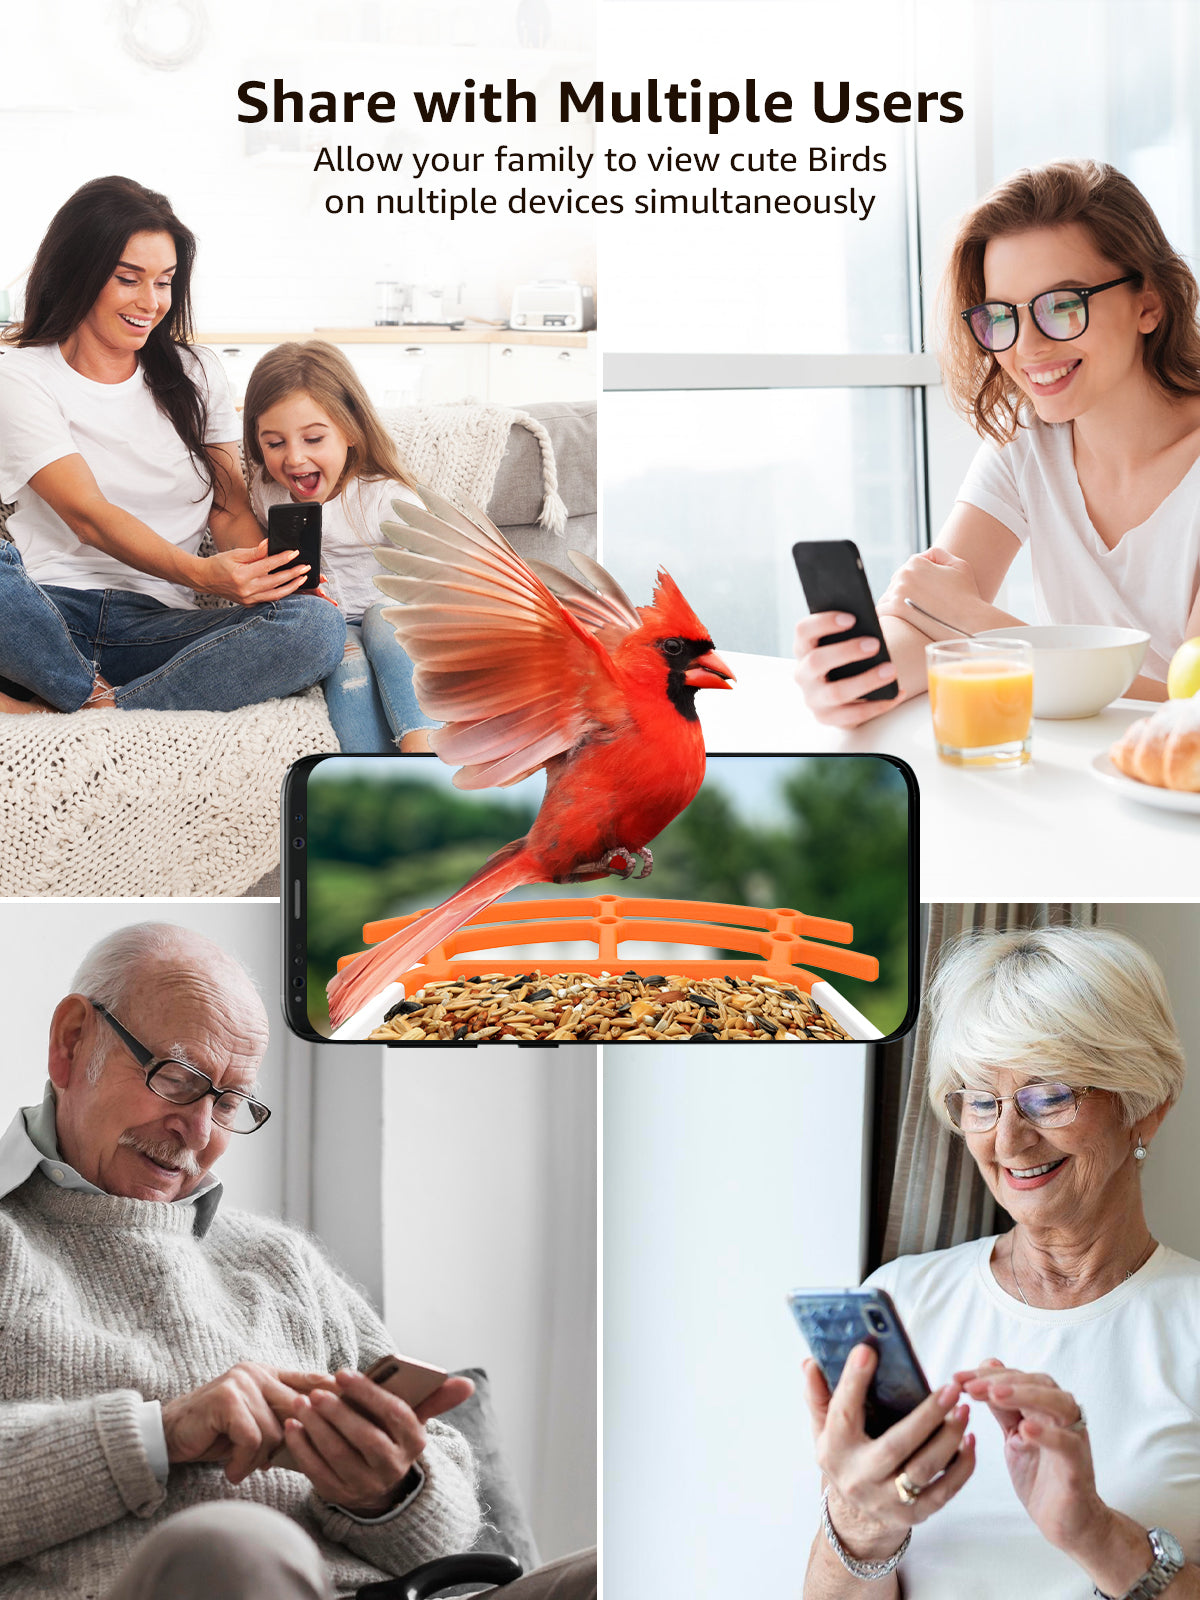 Mangeoire à oiseaux avec caméra Full HD connectée solaire